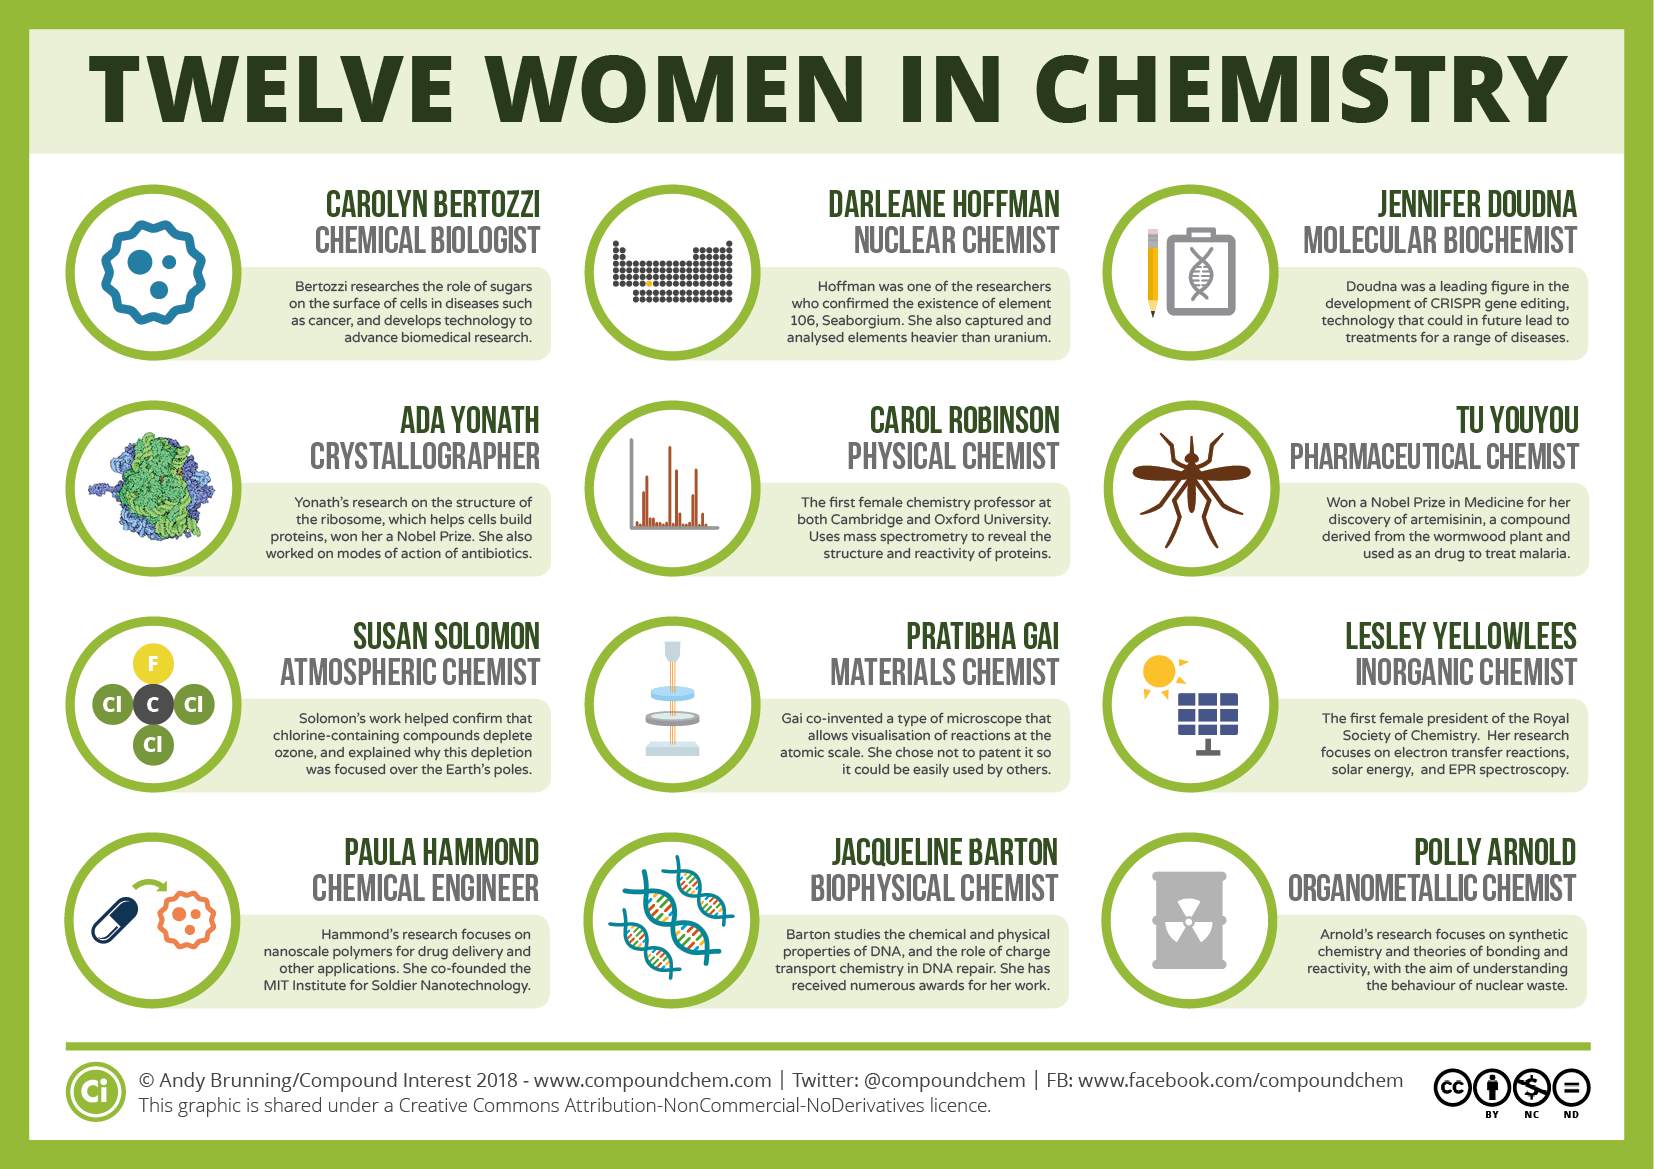 Compound Interest - International Women's Day: Twelve women in chemistry